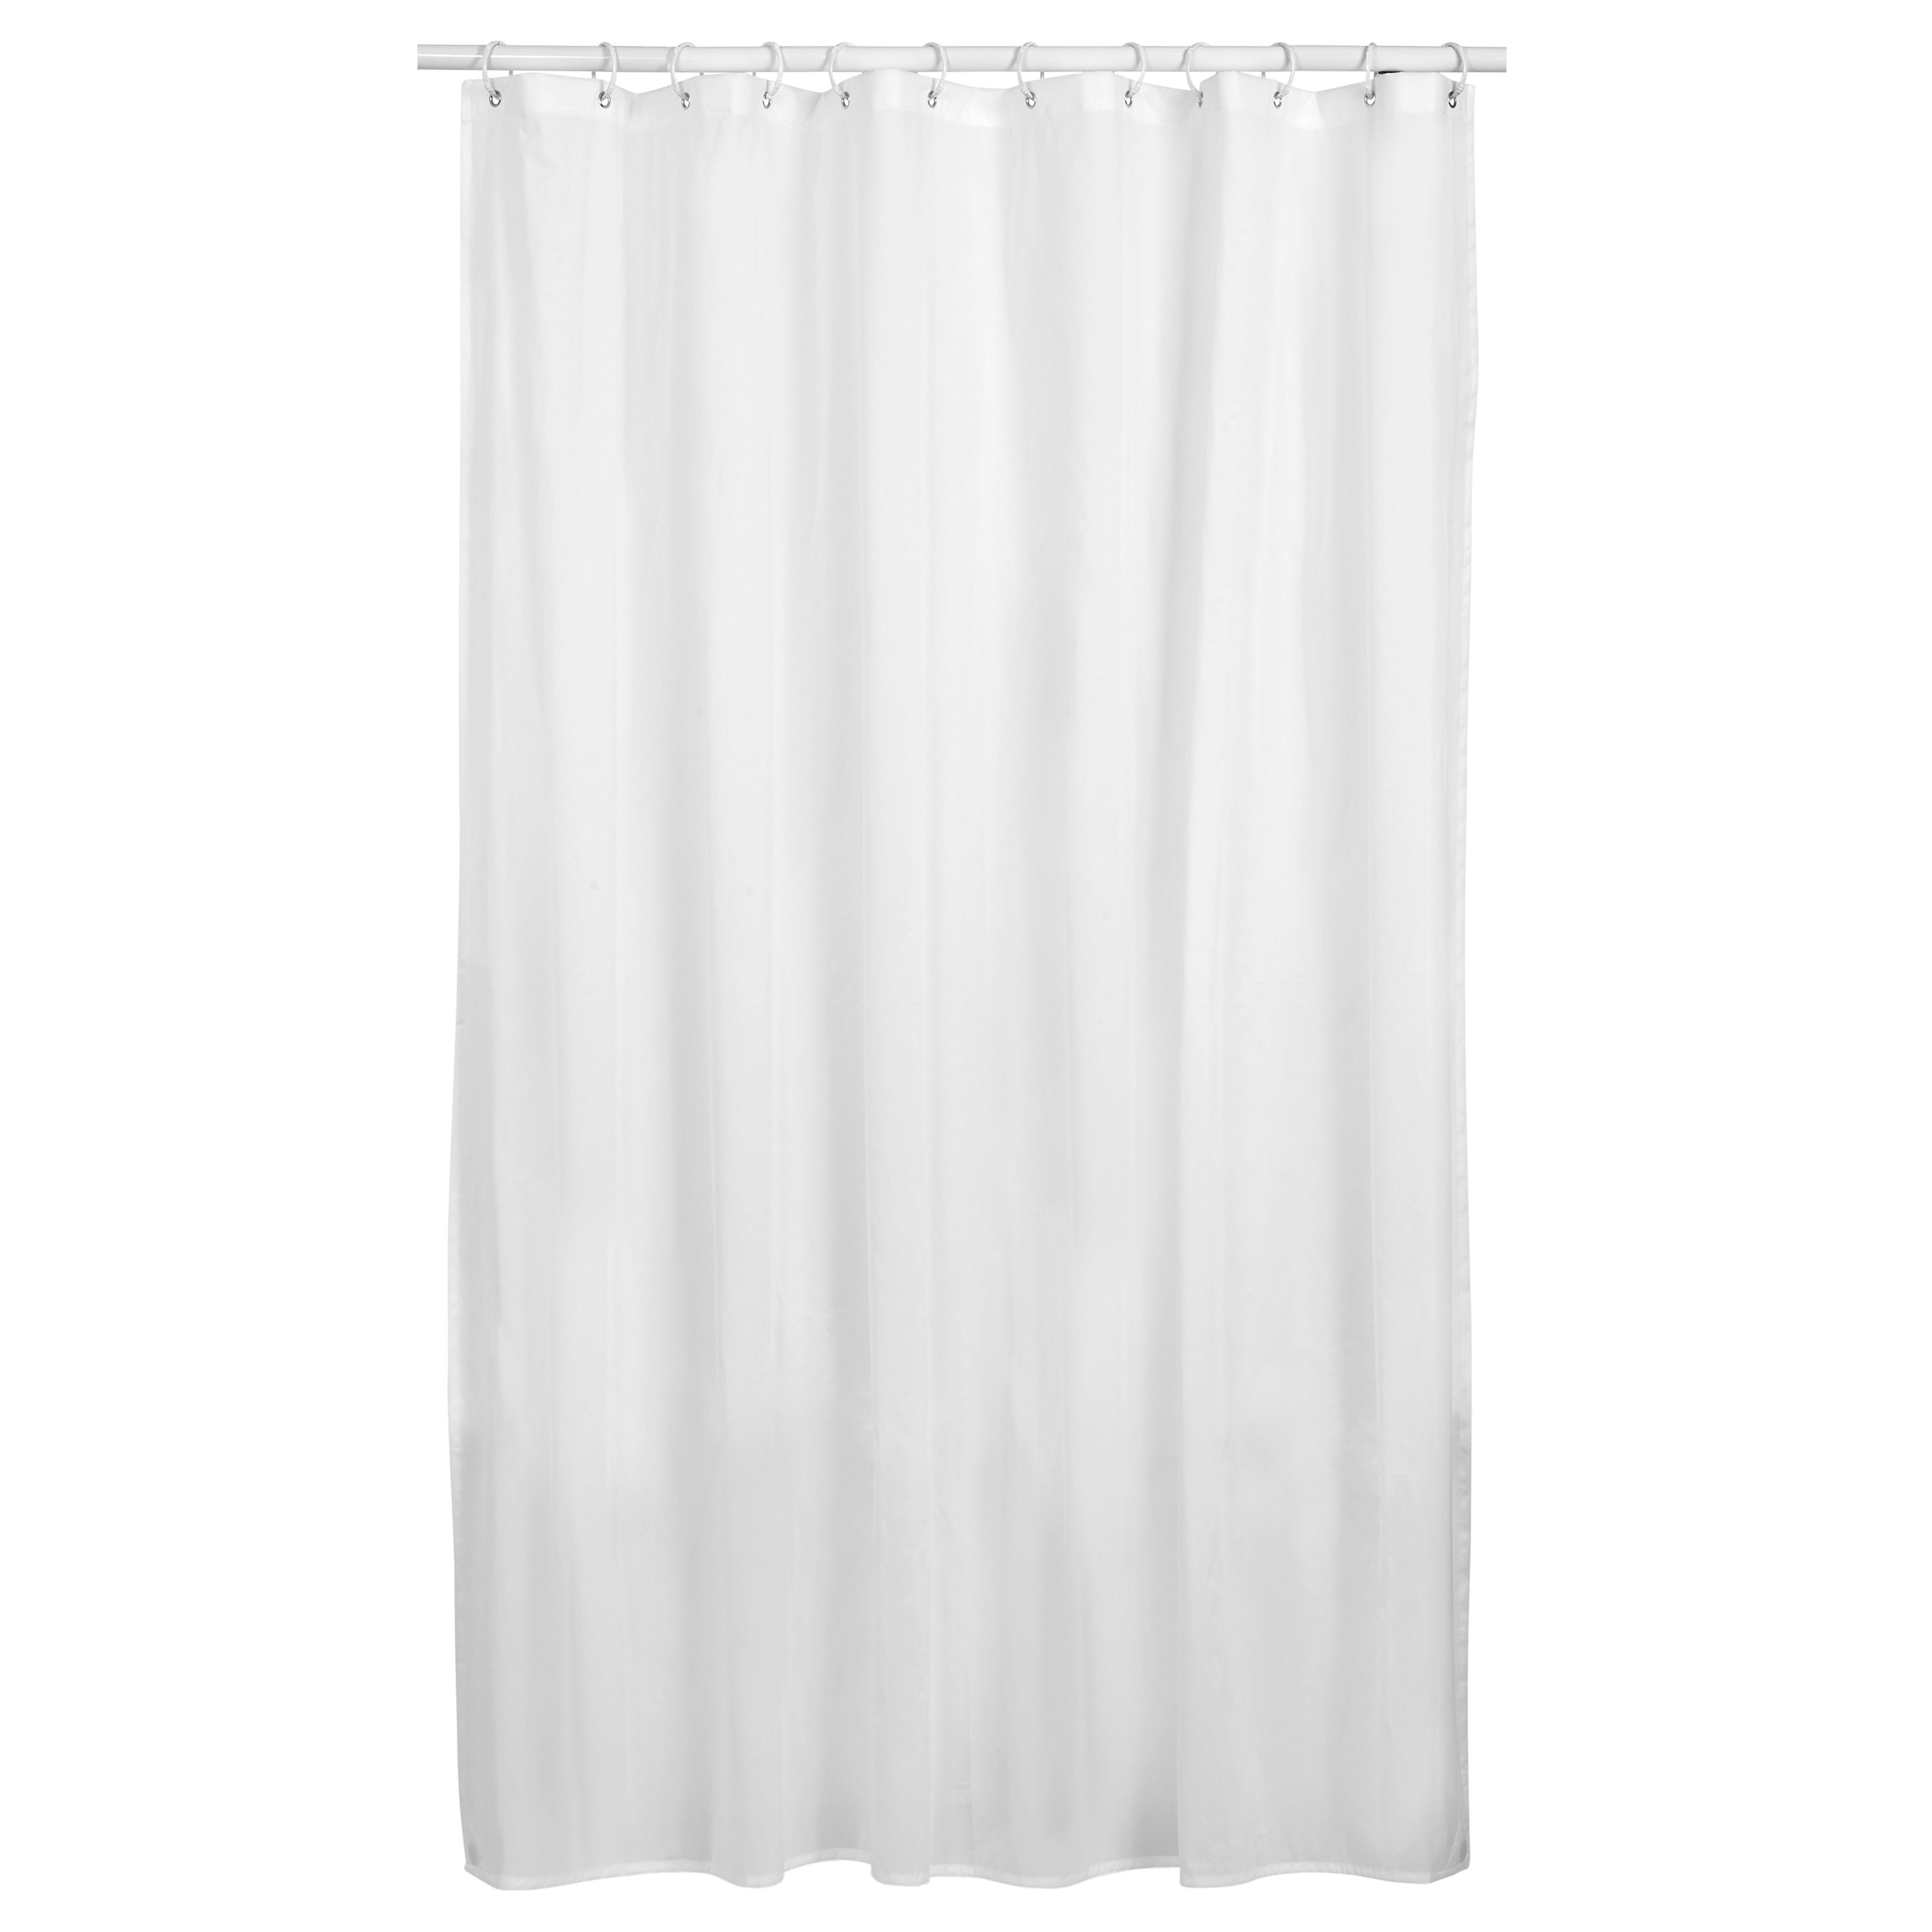 Door Light Rev Waterproof Bath Polyester Shower Curtain Liner Water Resistant 